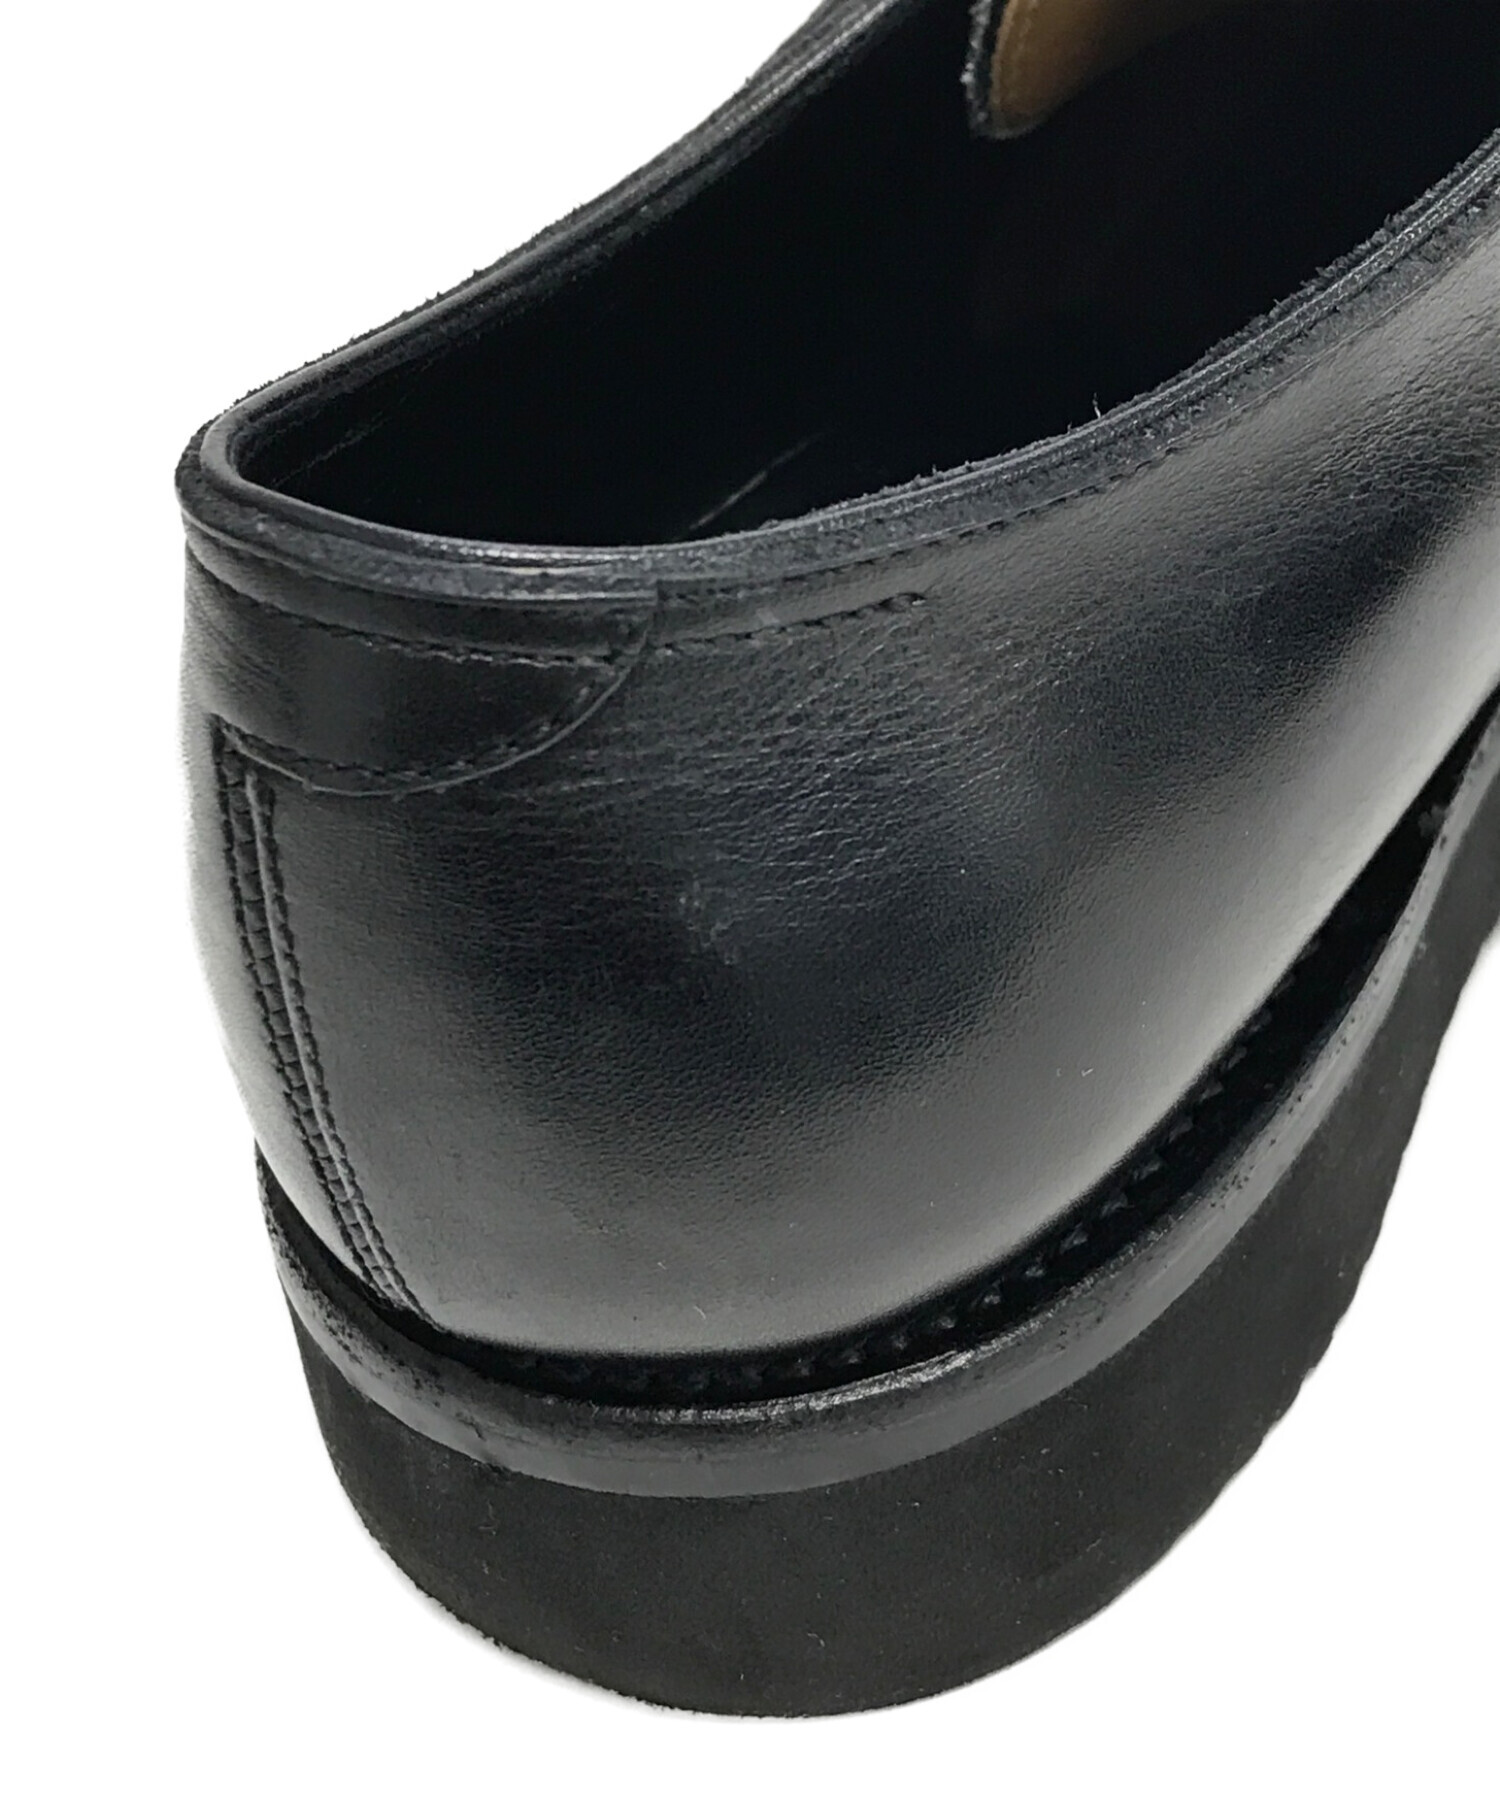 レンド RENDO シューズ ダブルモンクストラップ ビジネス レザー カーフレザー メンズ 靴 7(25cm相当) ブラウン素材カーフレザー